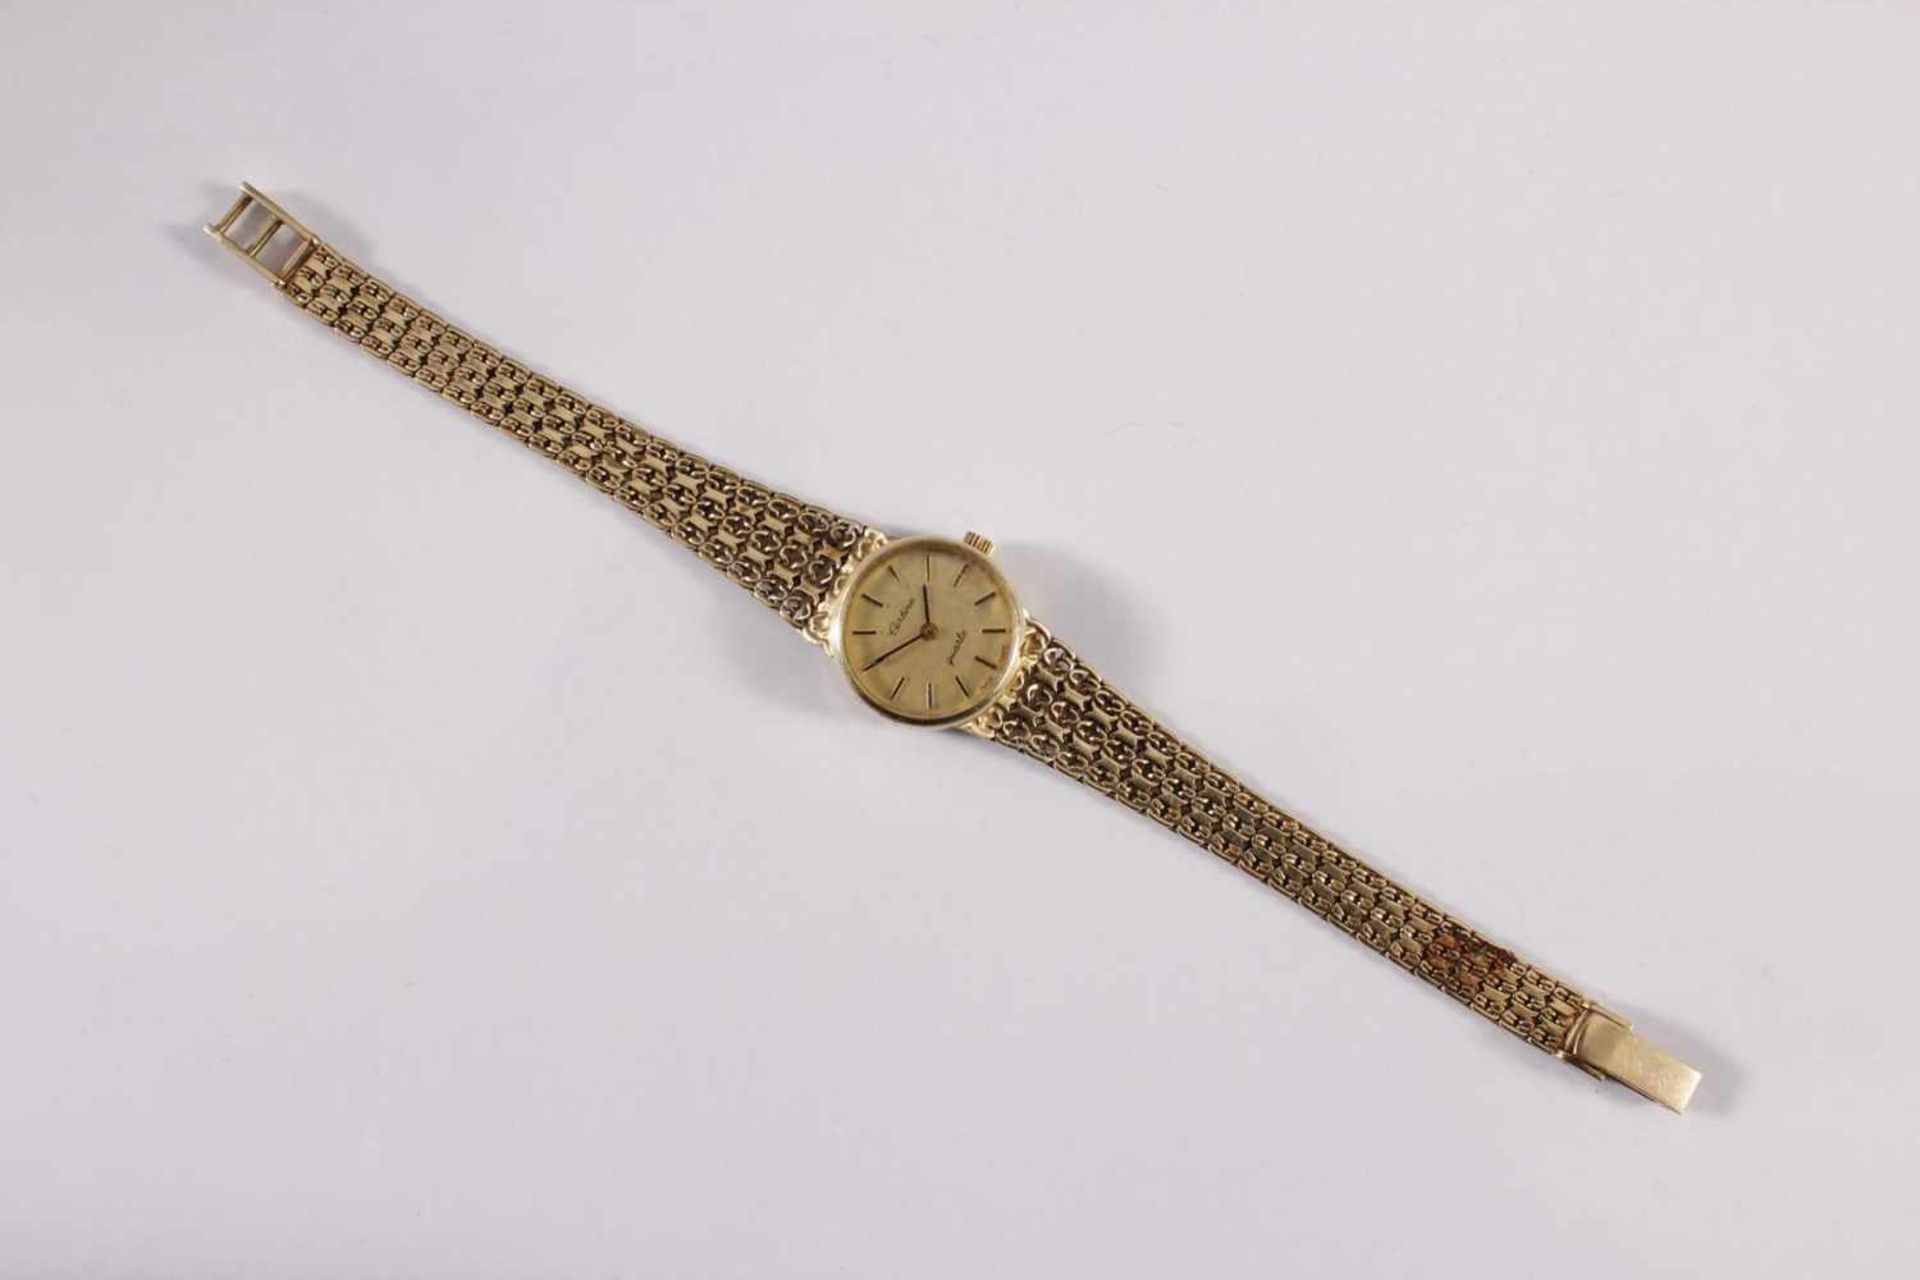 Damenarmbanduhr der Marke Sertina, 14 kt GelbgoldAm Verschluss punziert 585, auf dem Uhrendeckel